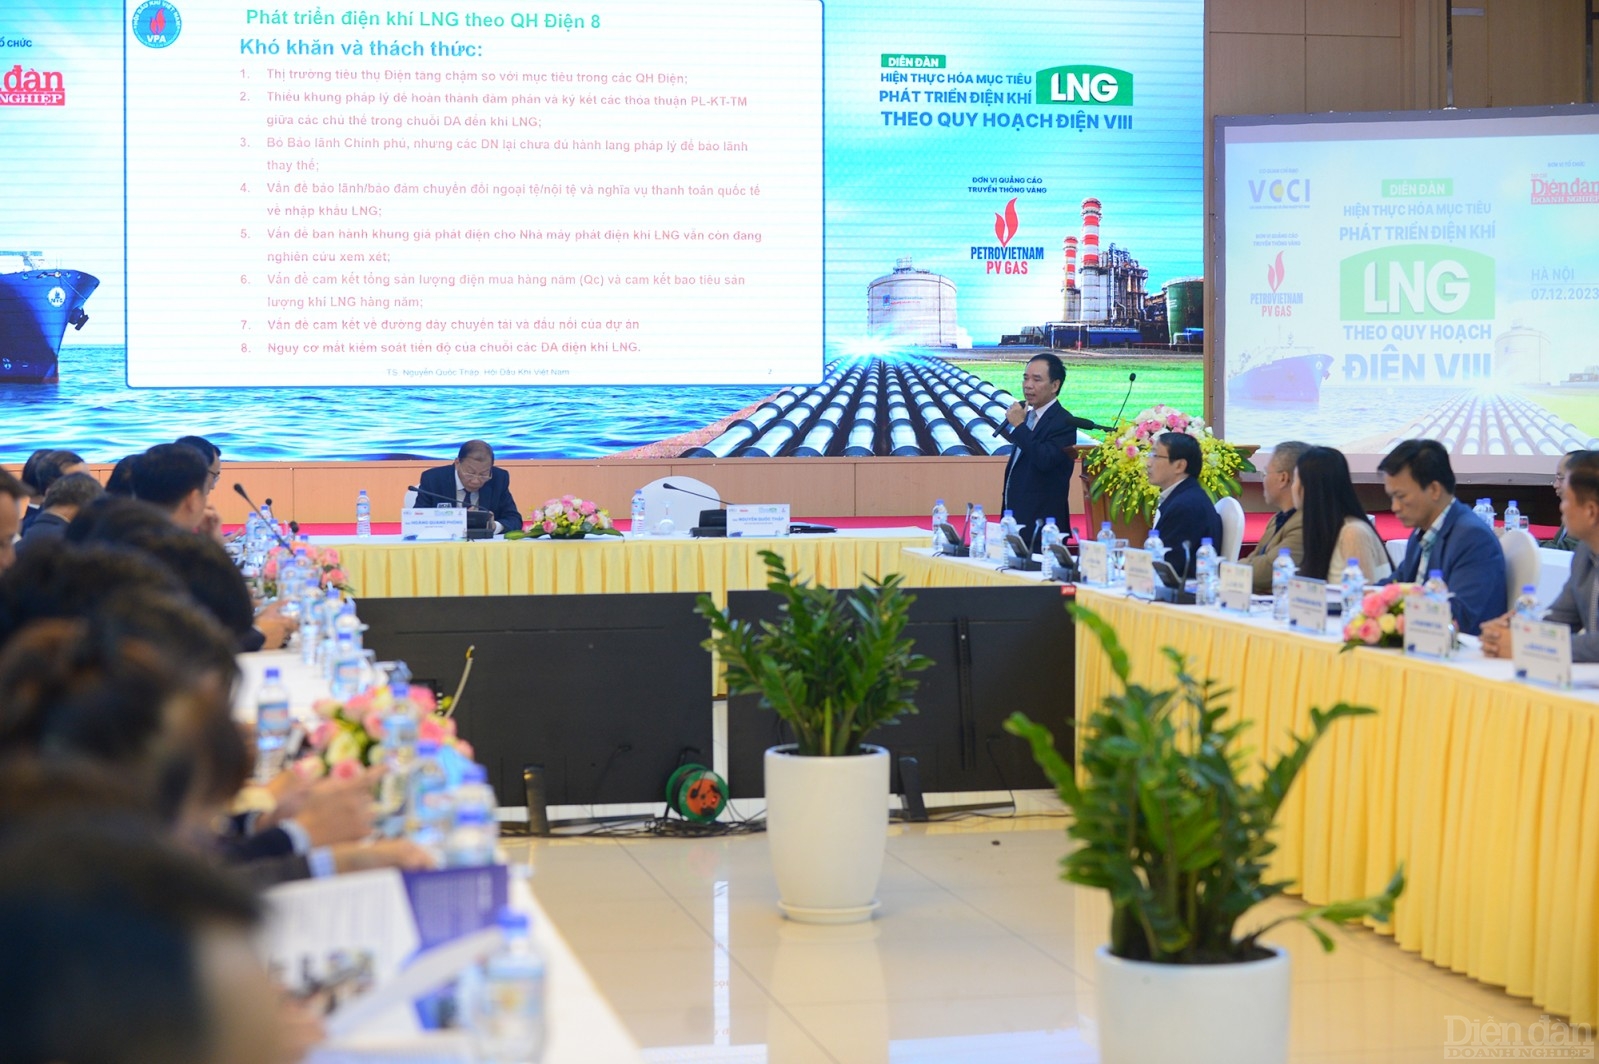 Hội Dầu khí Việt Nam đề xuất sáu nhóm các giải pháp nhằm tháo gỡ các vướng mắc khó khăn trong quá trình hiện thực hóa mục tiêu điện khí LNG trong QH Điện VIII.